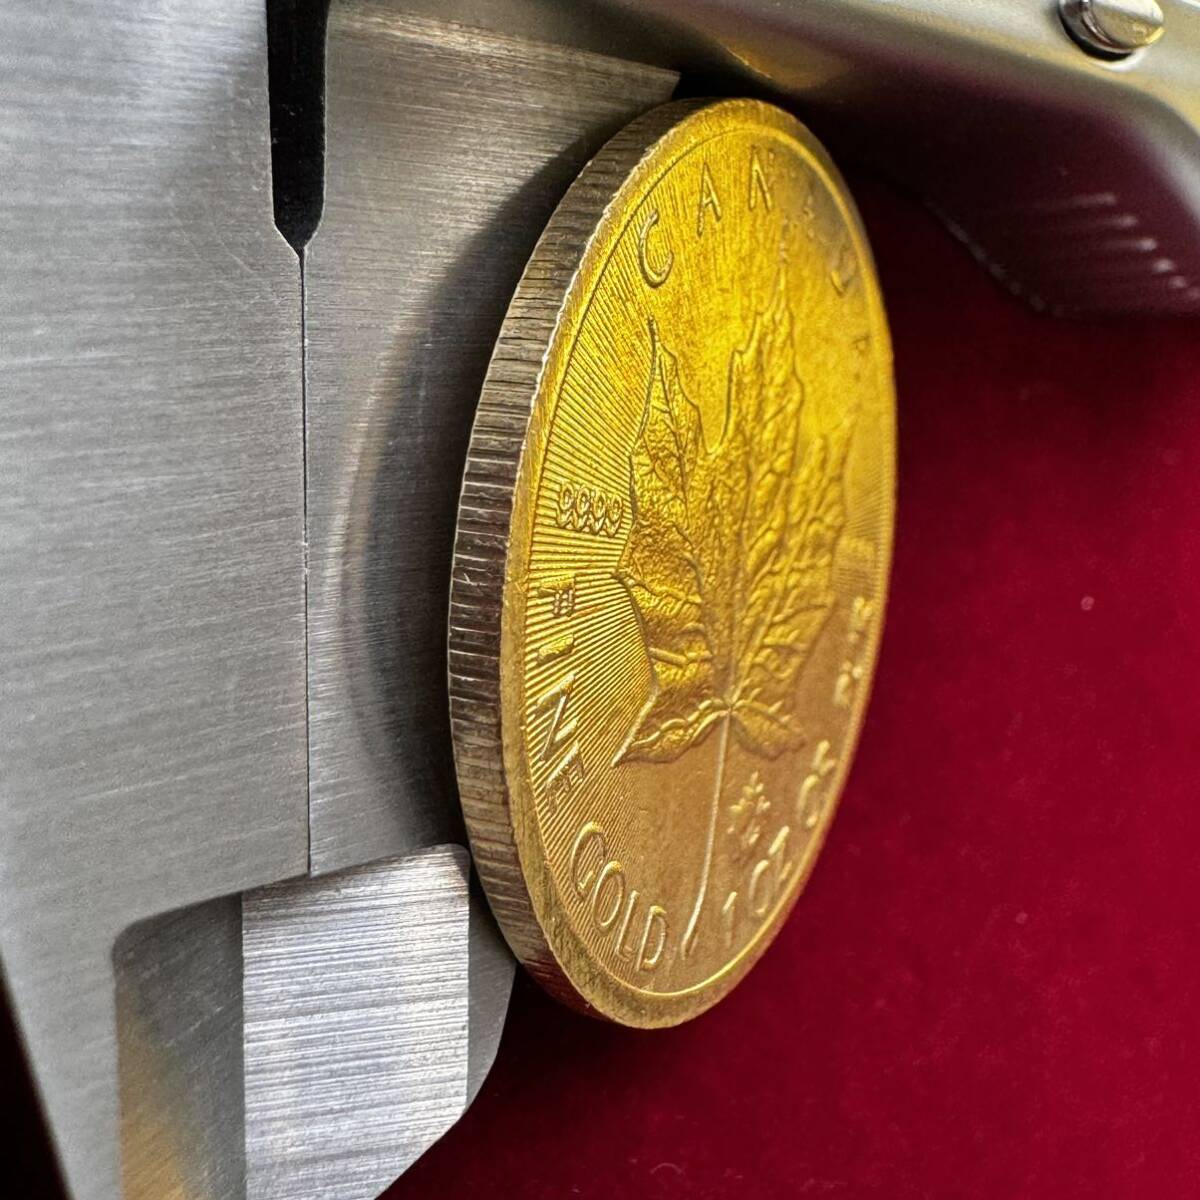 カナダ 硬貨 古銭 英連邦 2021年 エリザベス2世 メープル サトウカエデ 国章 記念幣 コイン 外国古銭 海外硬貨 _画像3